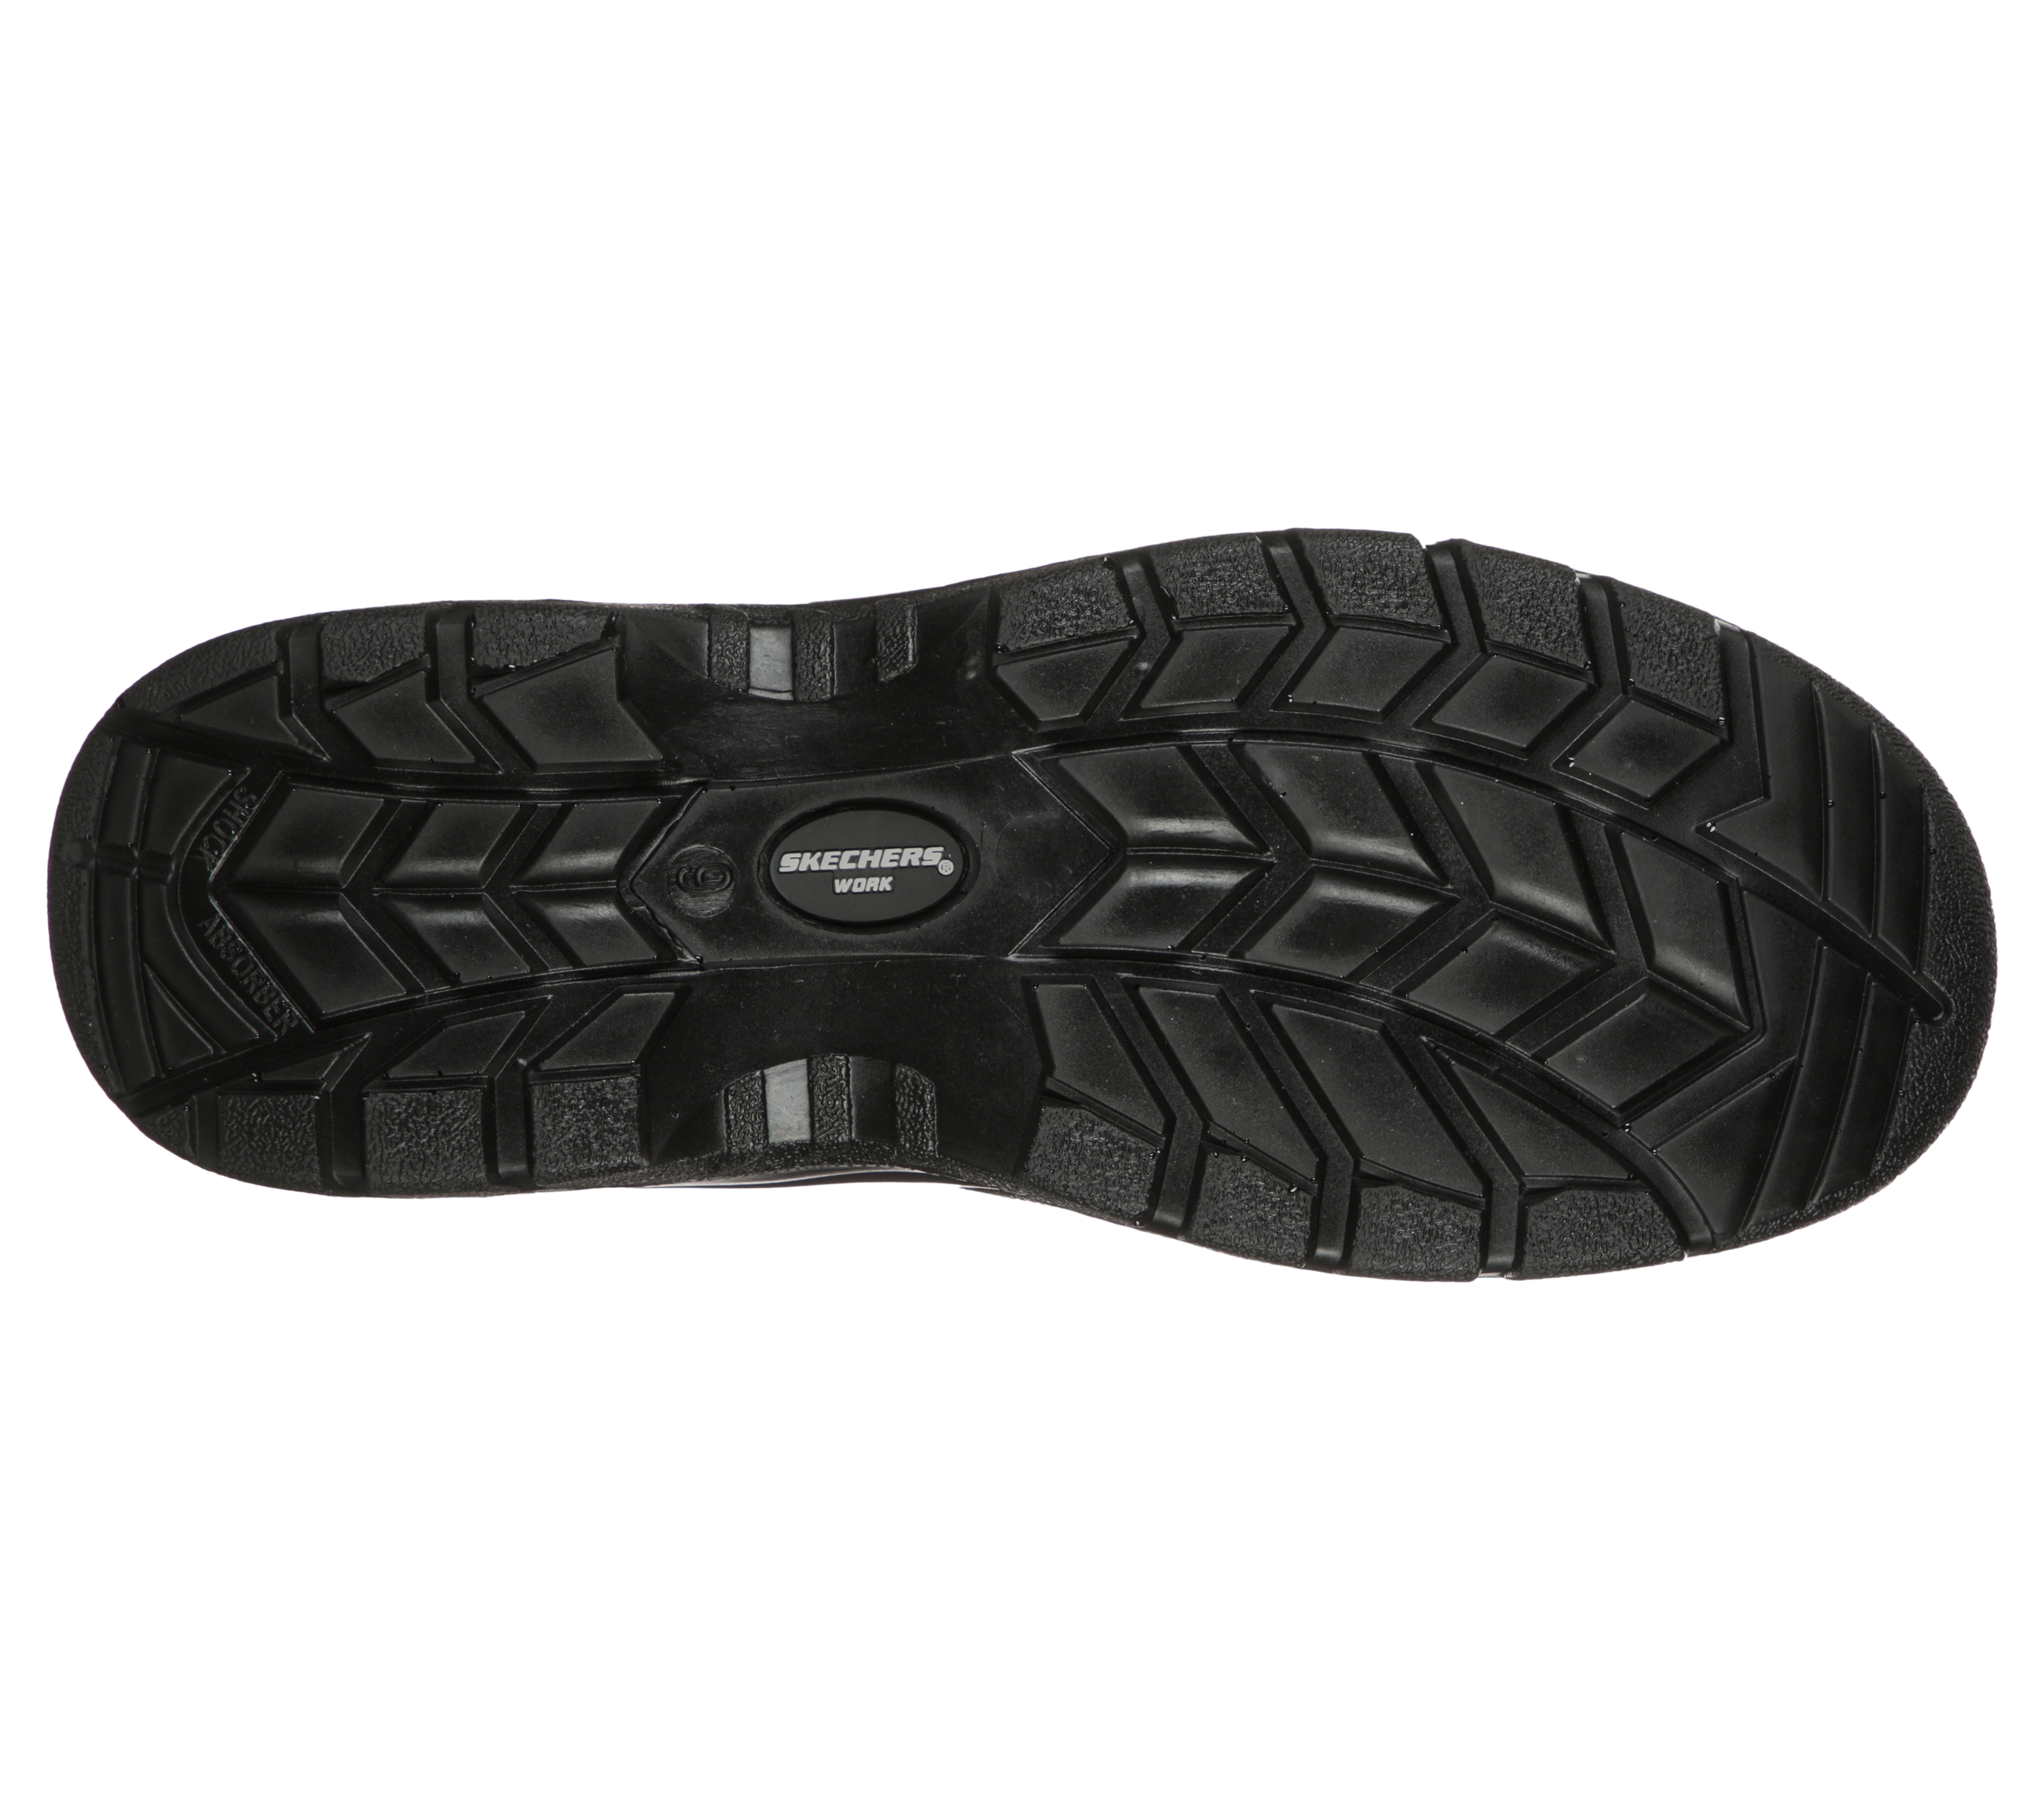 2 sizes available Mens Portwest Black Compositelite Safety Shoe 